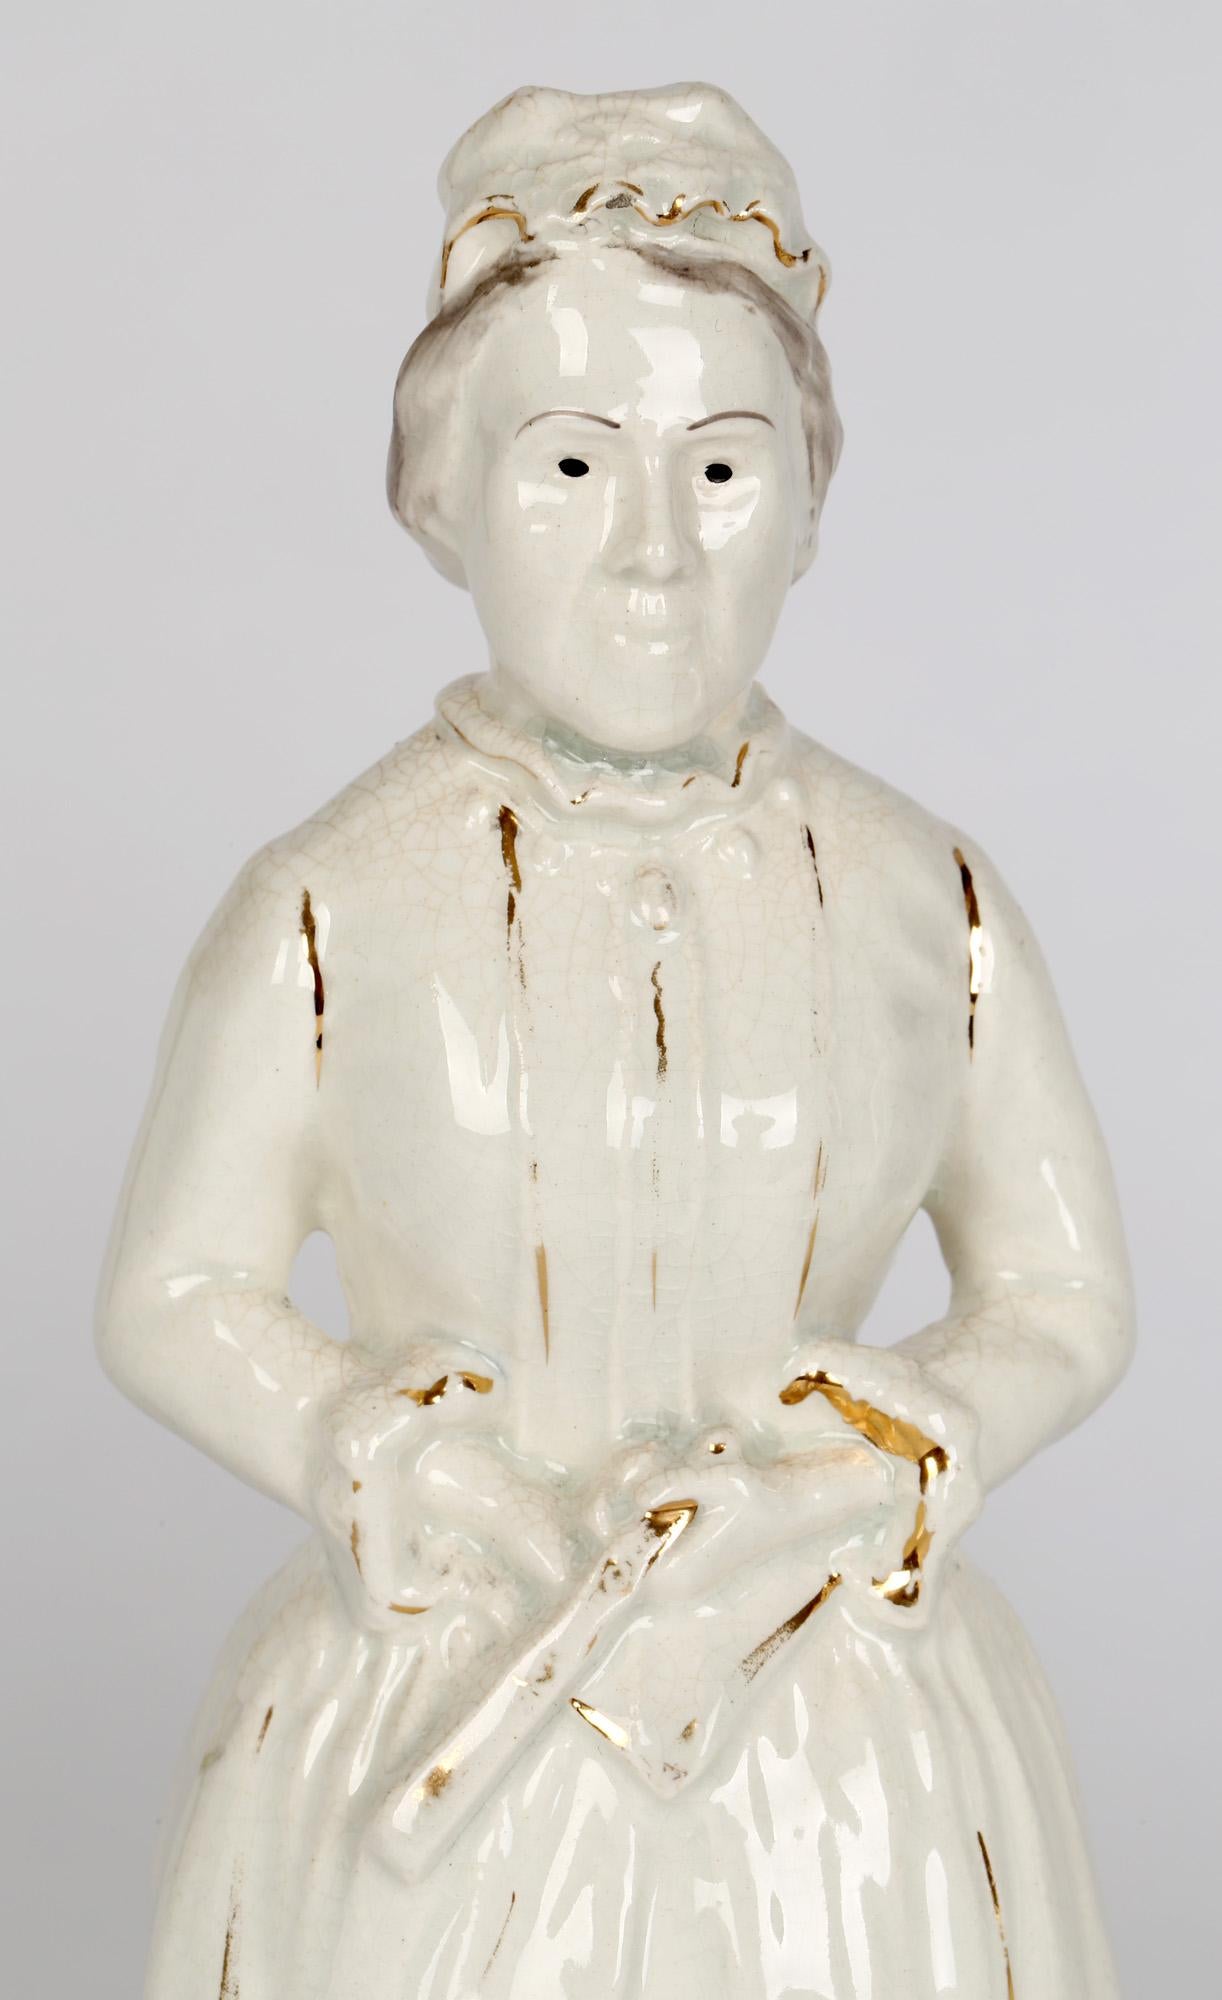 Une paire rare de personnages politiques en poterie Staffordshire intitulée Mr & Mrs Gladstone et datant de la fin du 19ème siècle. Les figures moulées représentent le premier ministre William Ewart Gladstone debout, tenant un document parcheminé et